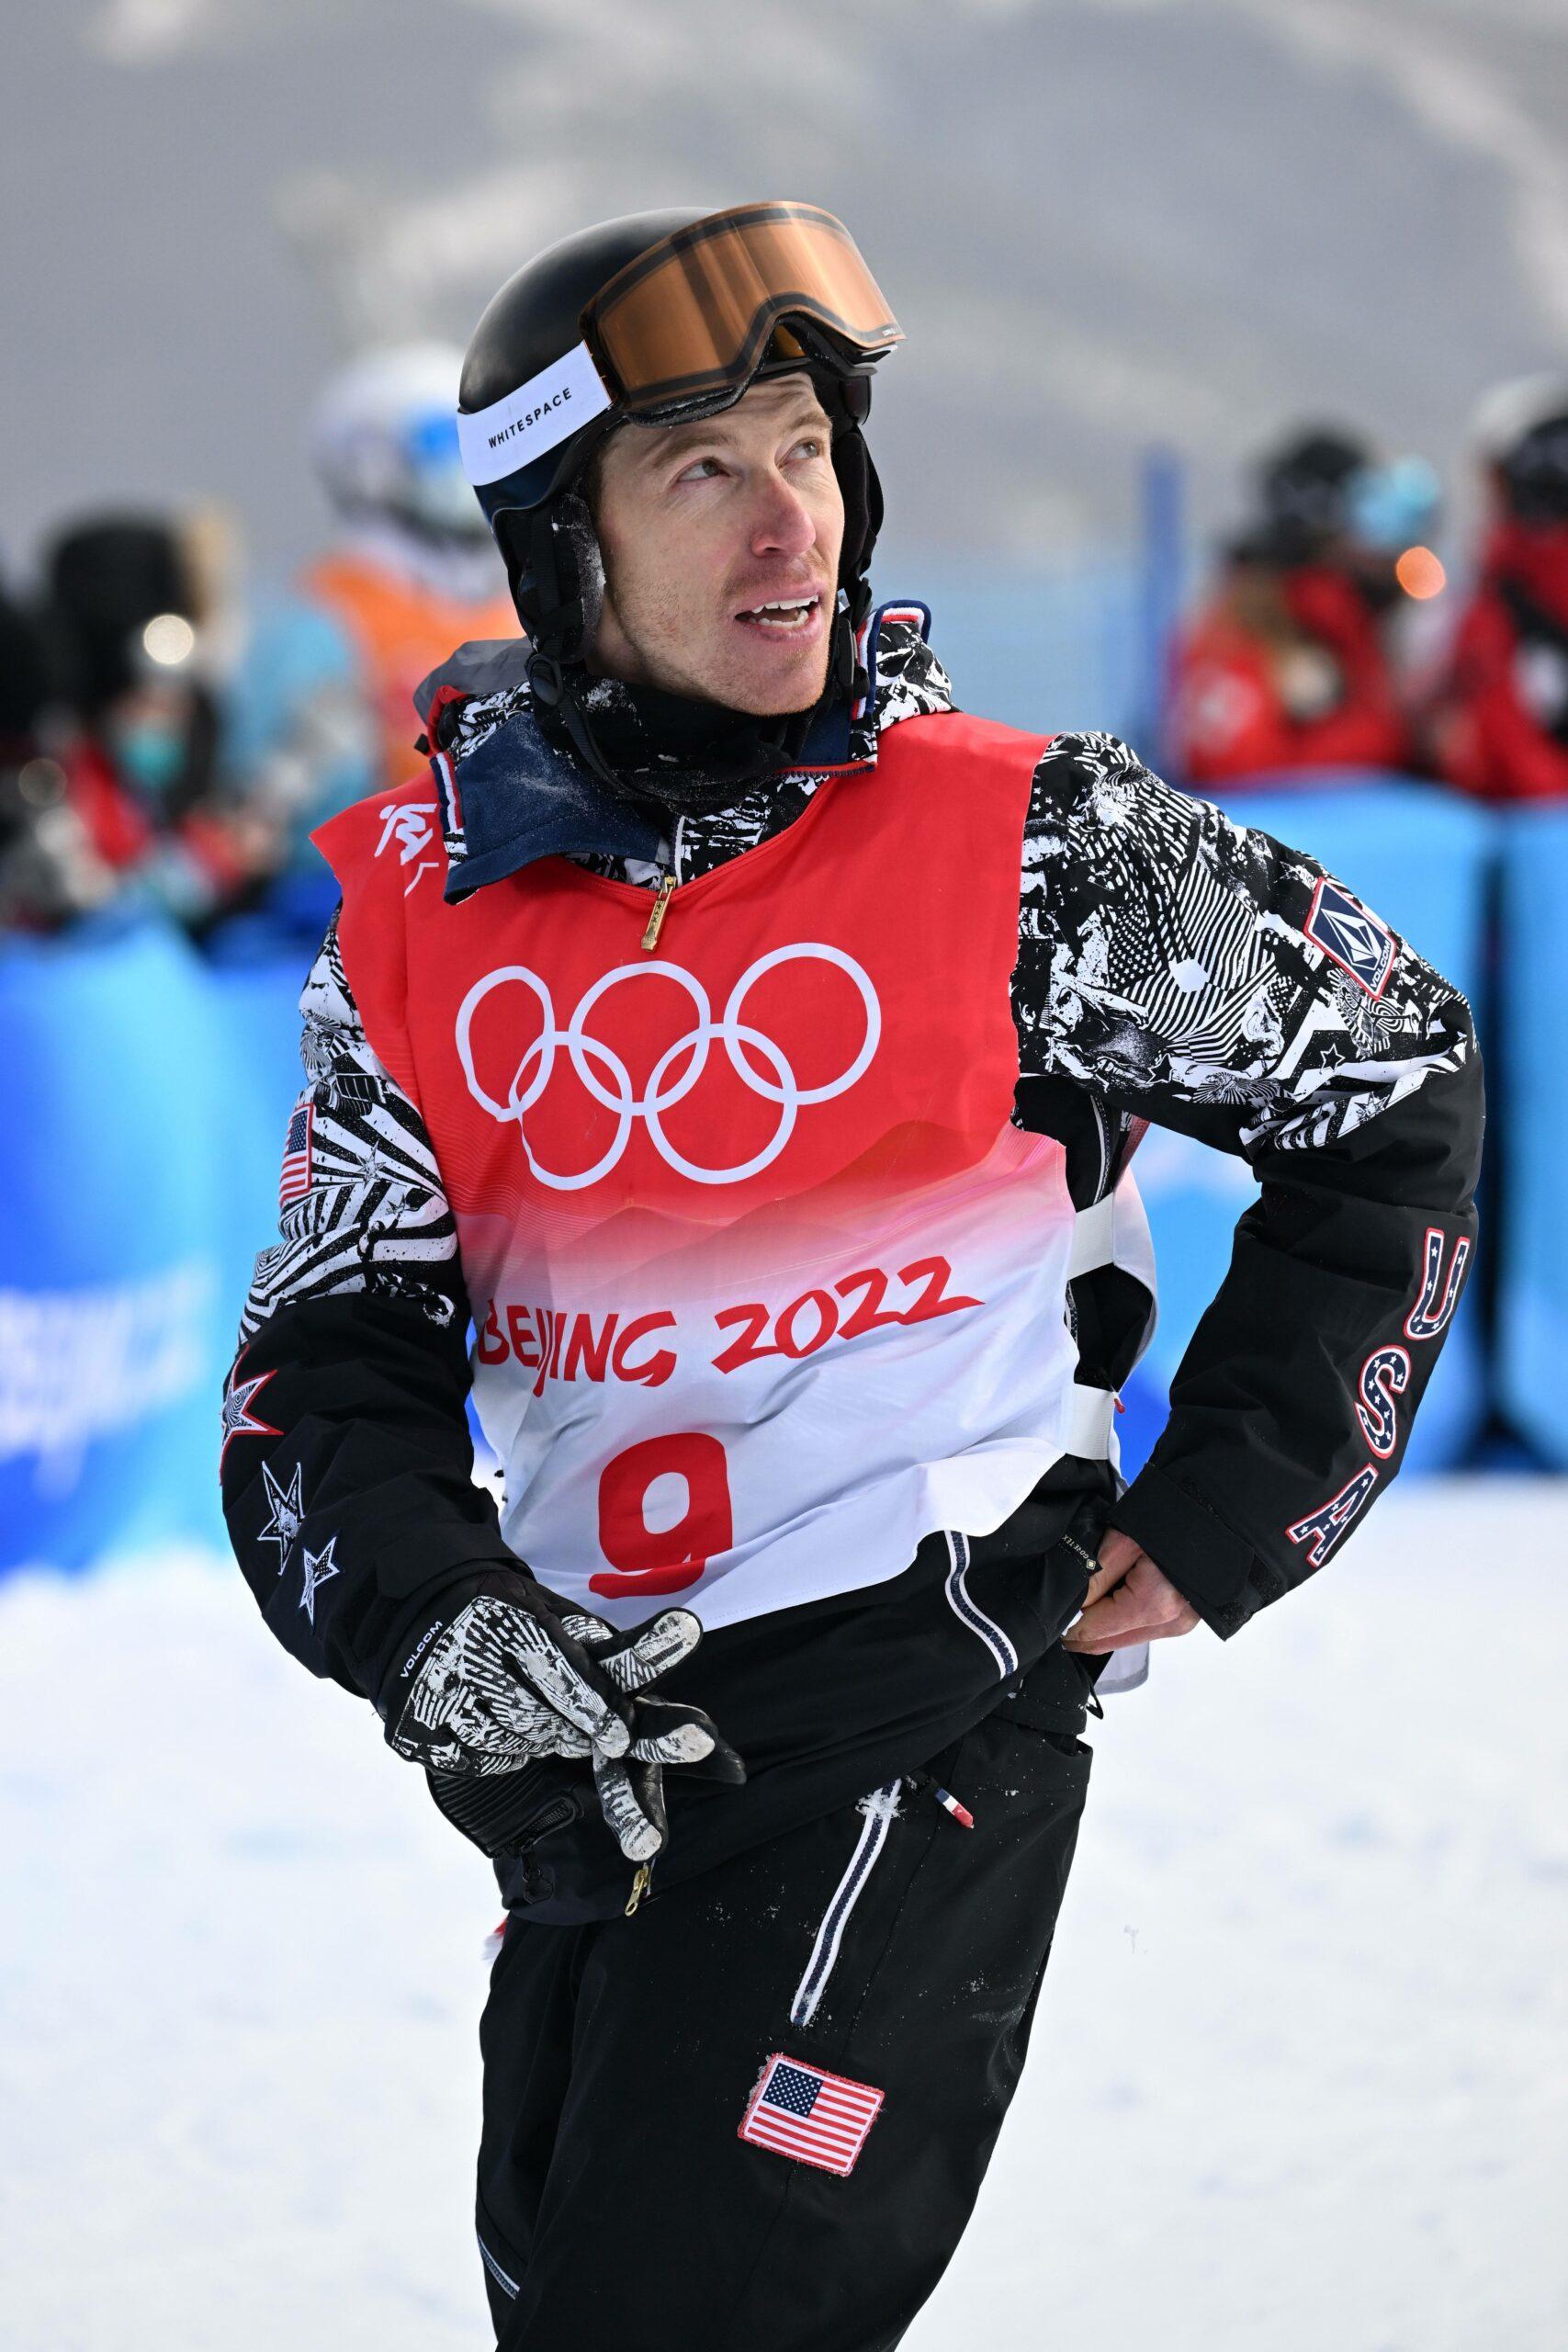 Shaun White at Olympics Beijing 2022: February 9, 2022